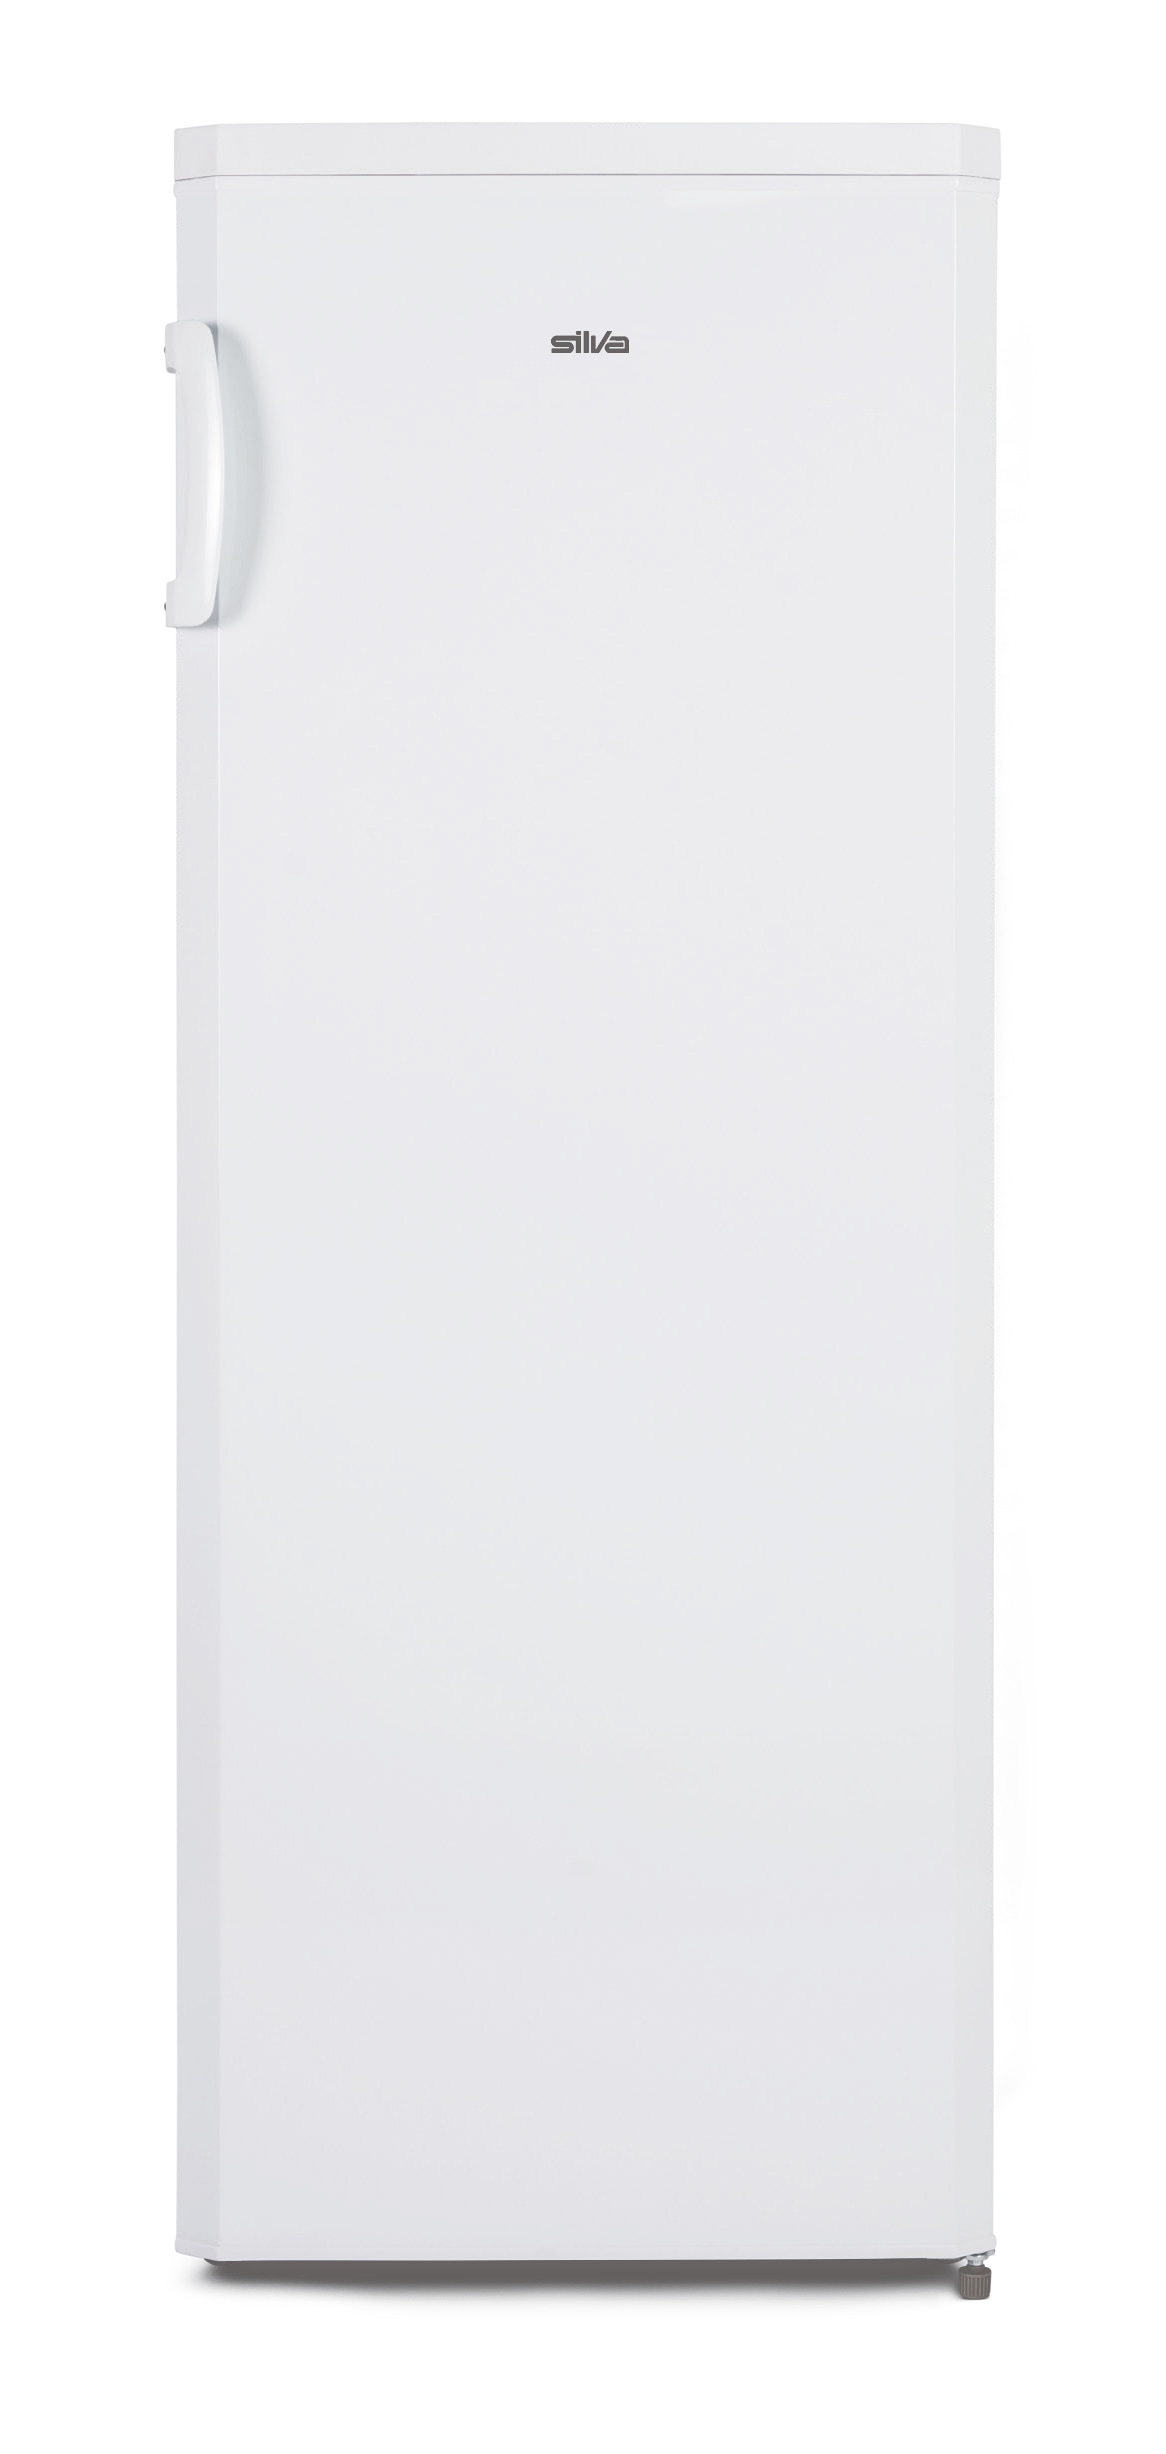 Silva Homeline Getränkekühlschrank, G-KS 2295, 143 cm hoch, 55 cm breit  jetzt kaufen bei OTTO